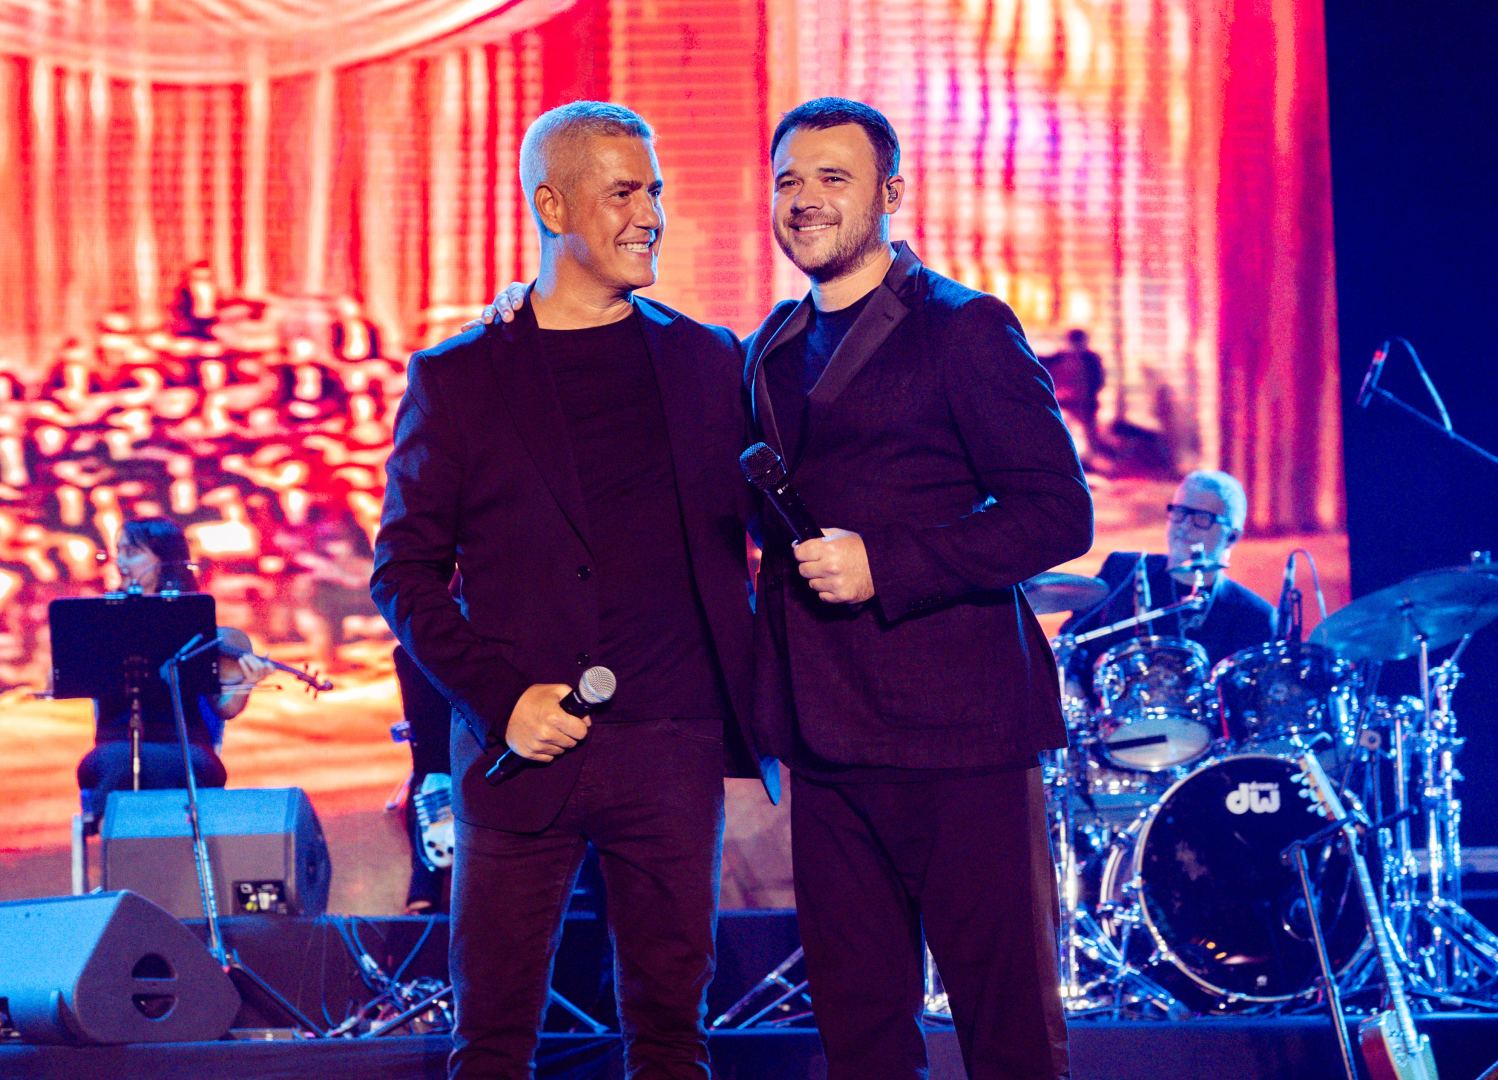 Алессандро Сафина в преддверии юбилея выступил с потрясающим концертом в Баку (ВИДЕО, ФОТО)